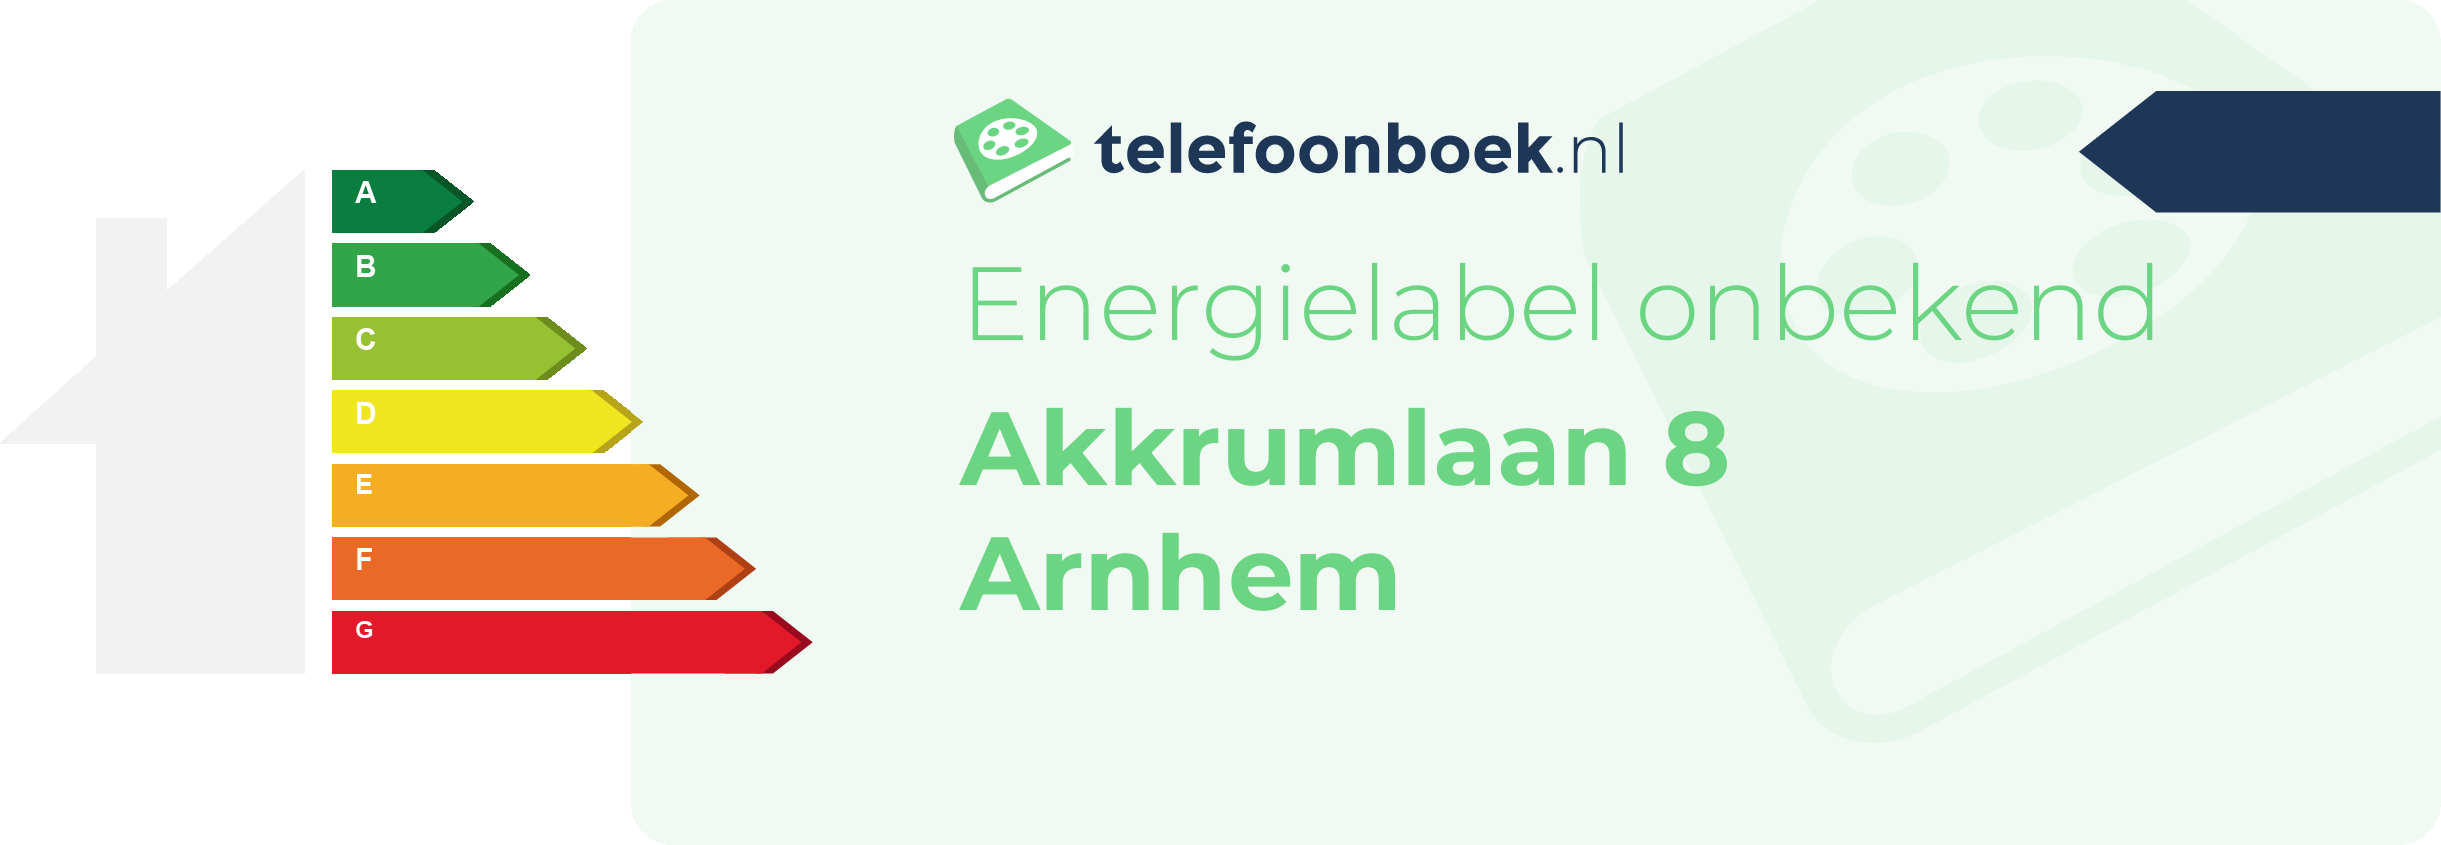 Energielabel Akkrumlaan 8 Arnhem